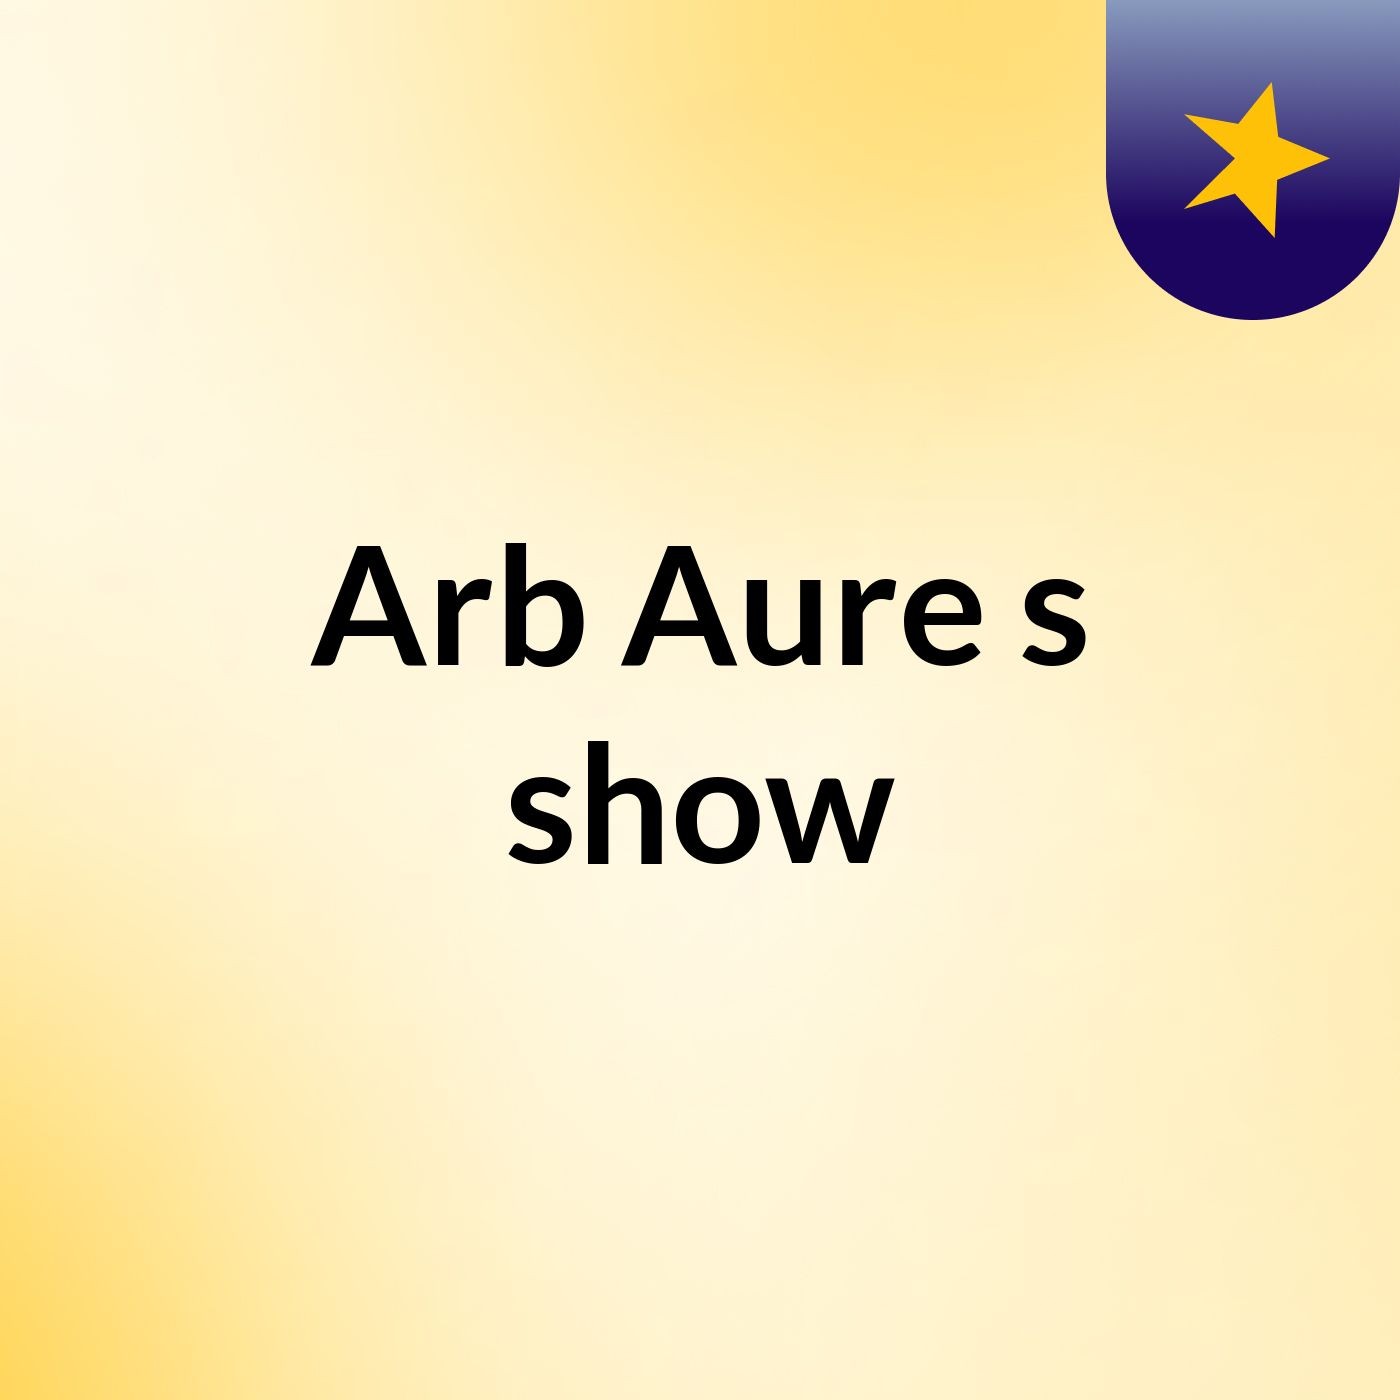 Arb Aure's show